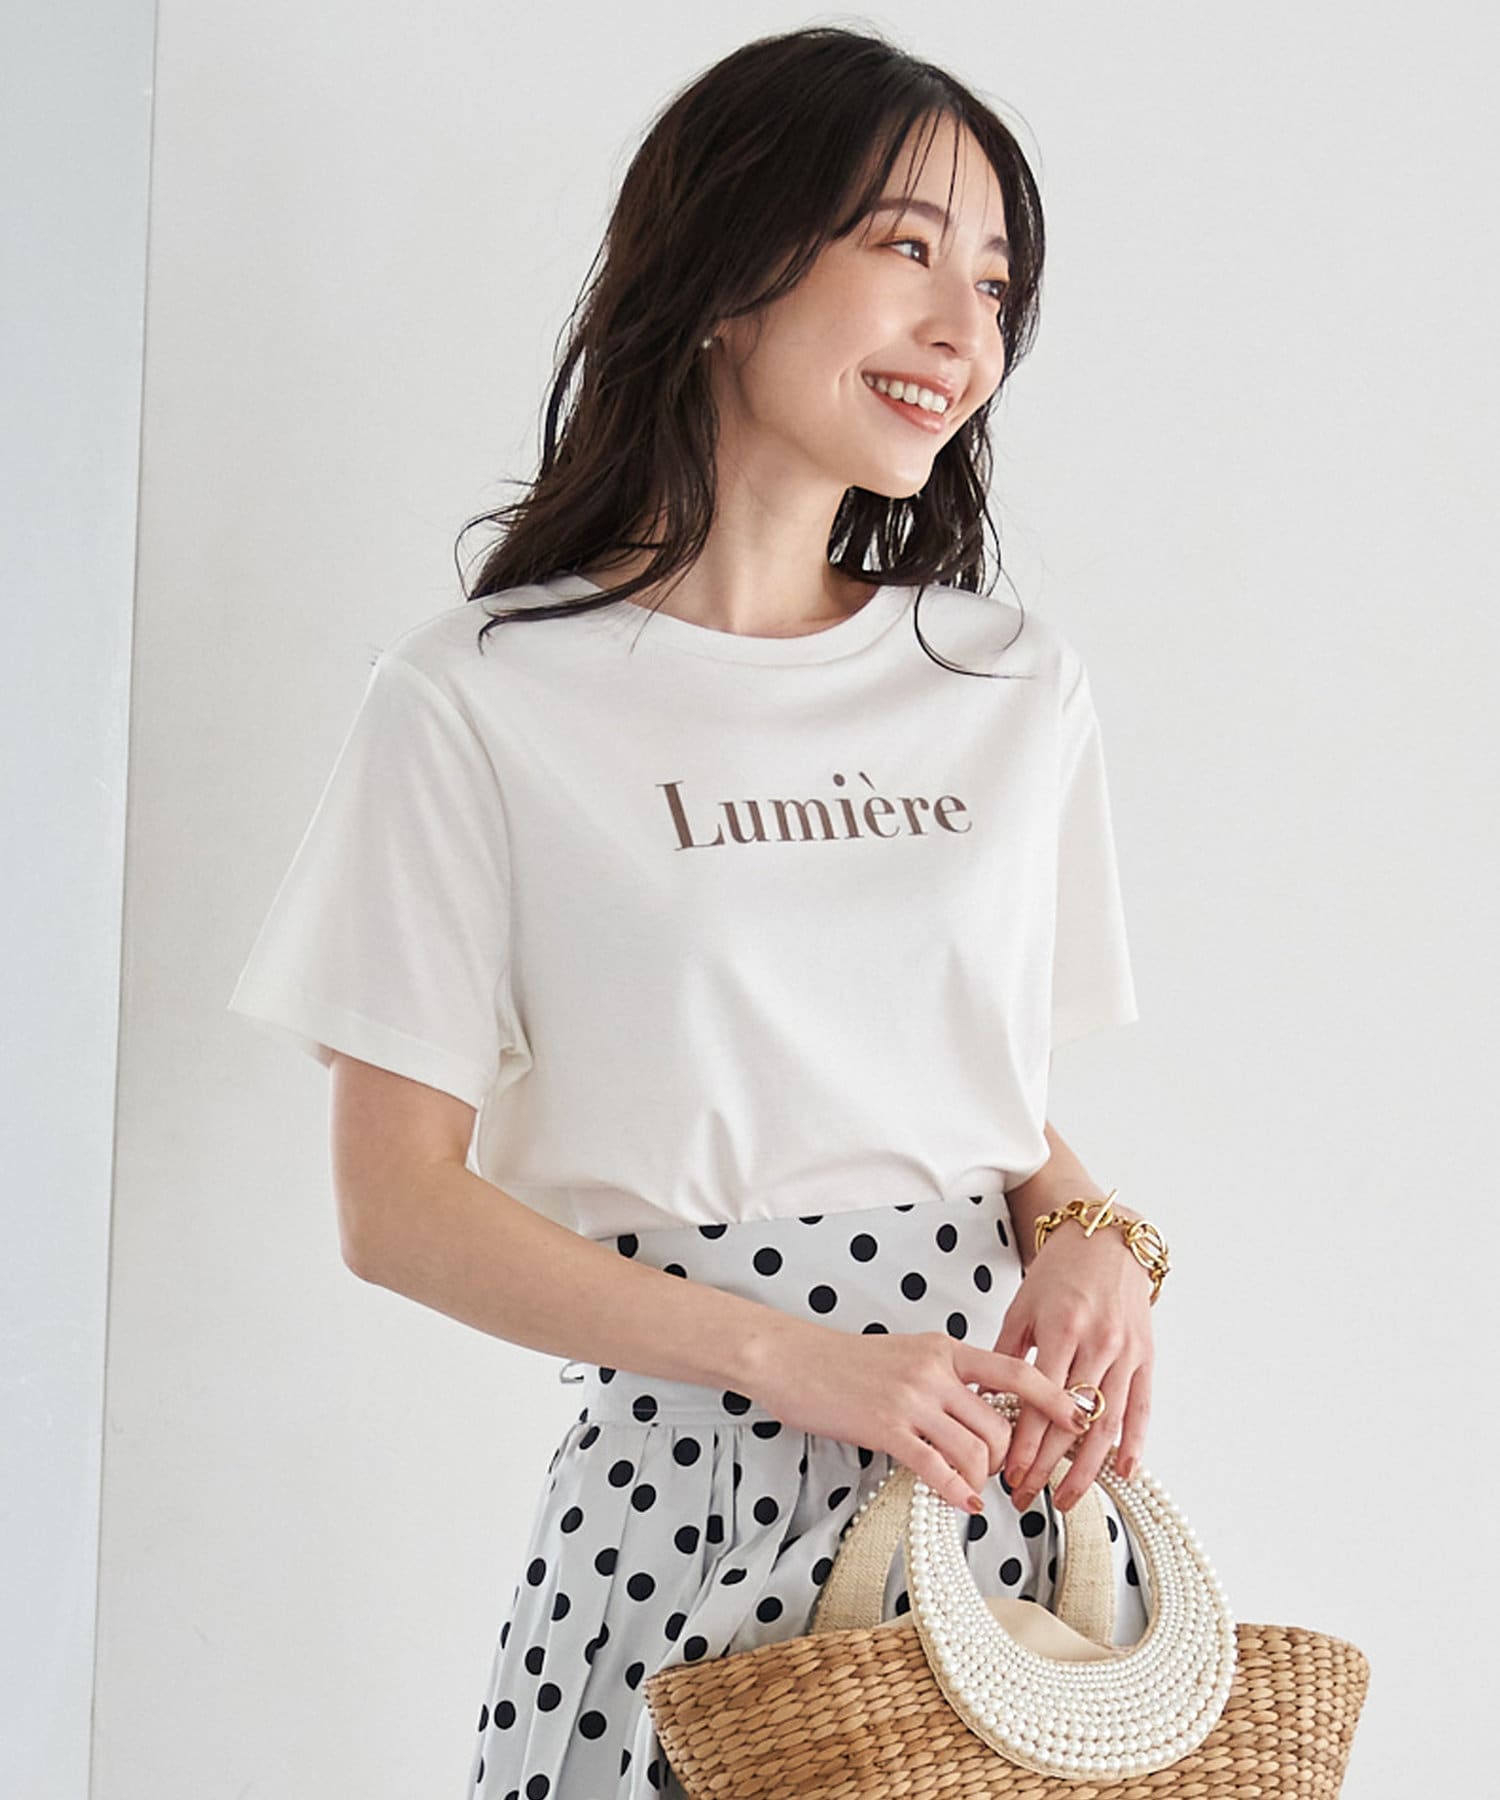 Lumiere Tシャツ | La boutique BonBon(ラブティックボンボン